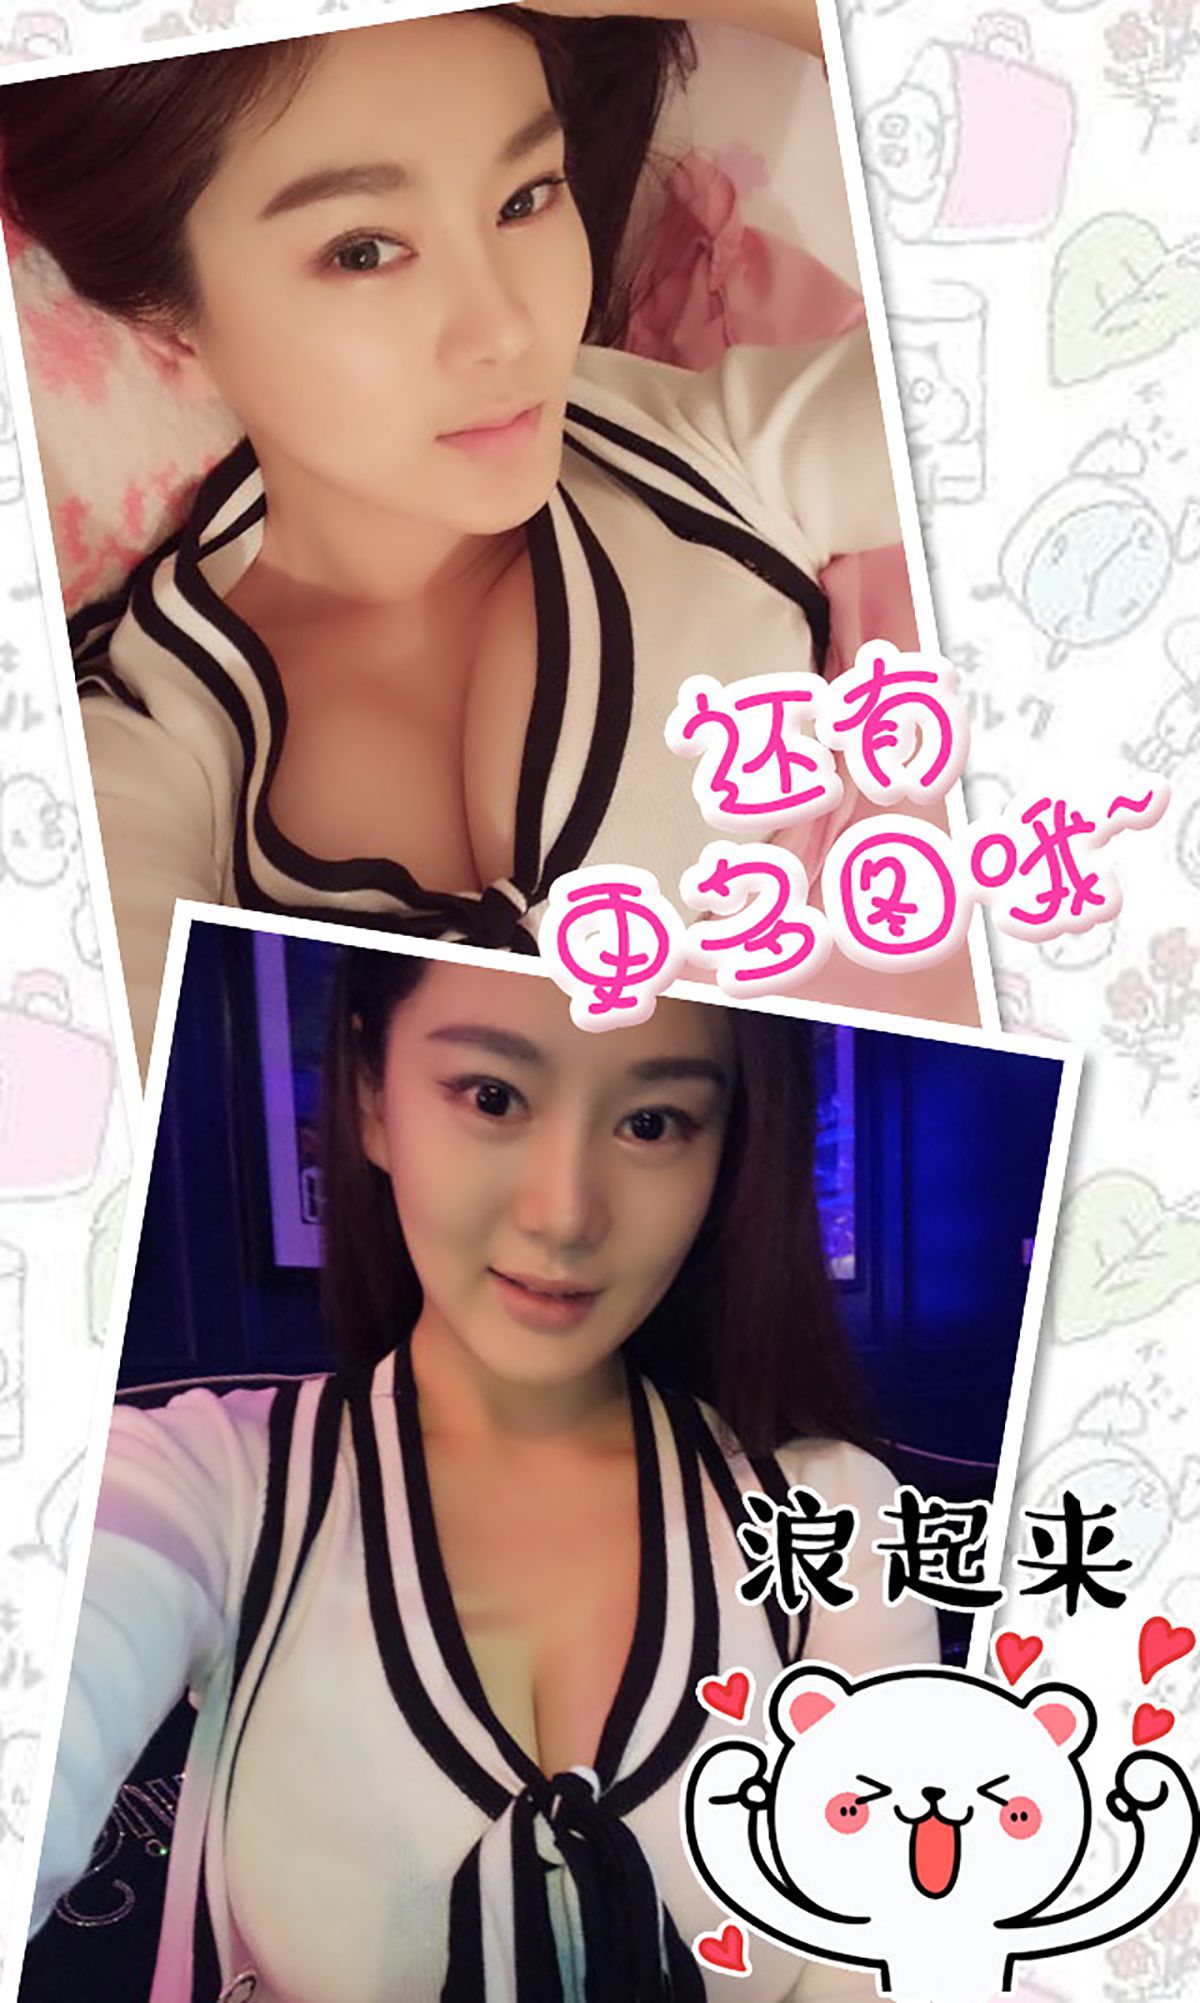 Yi Yang/Yi Xiuhui “Pretty School Girl with Violent Body” [爱尤物Ugirls] No.351 Photo Album